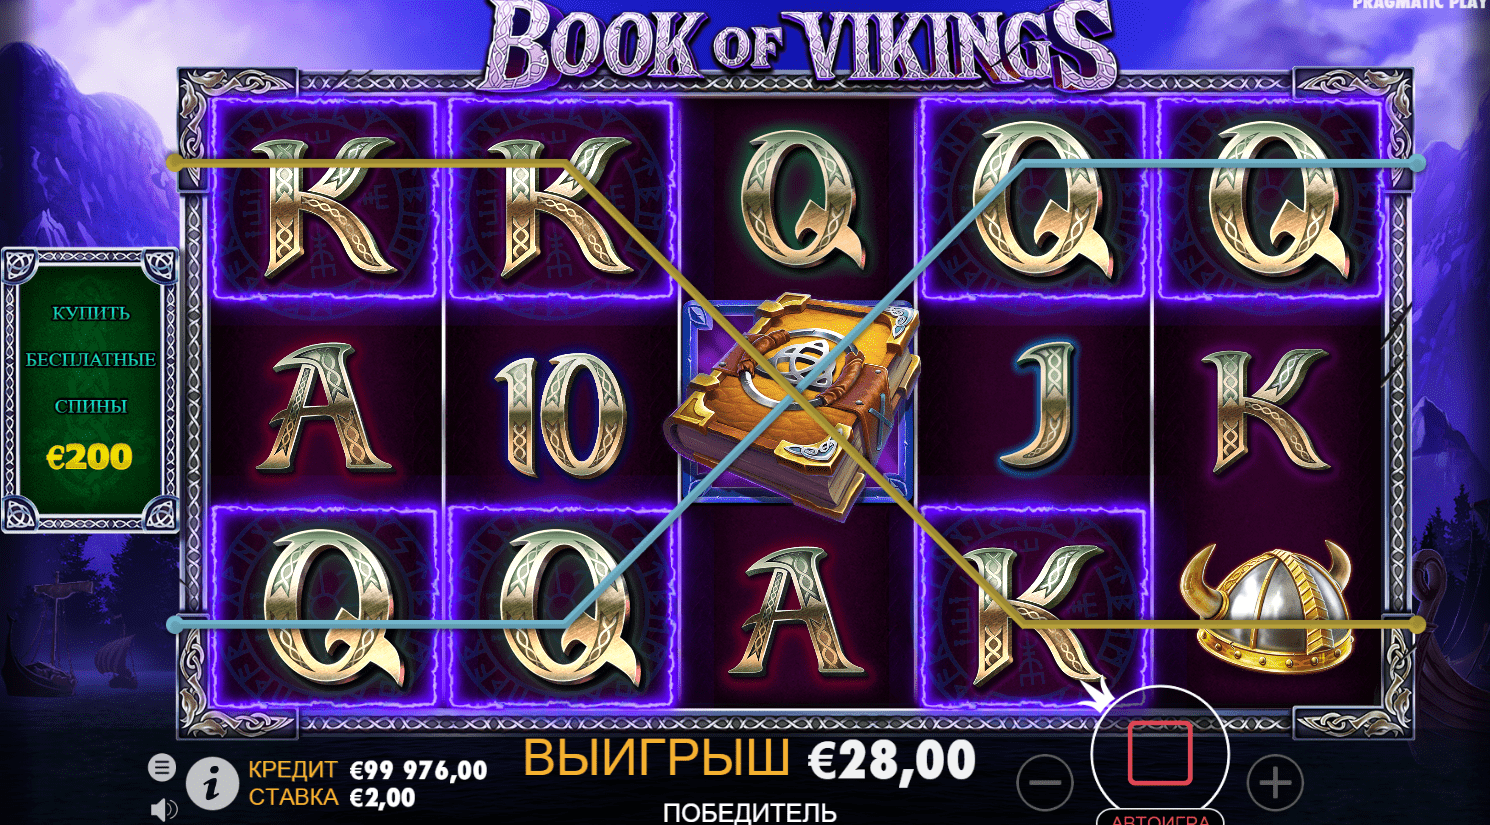 Tours gratuits dans le jeu Book of Vikings